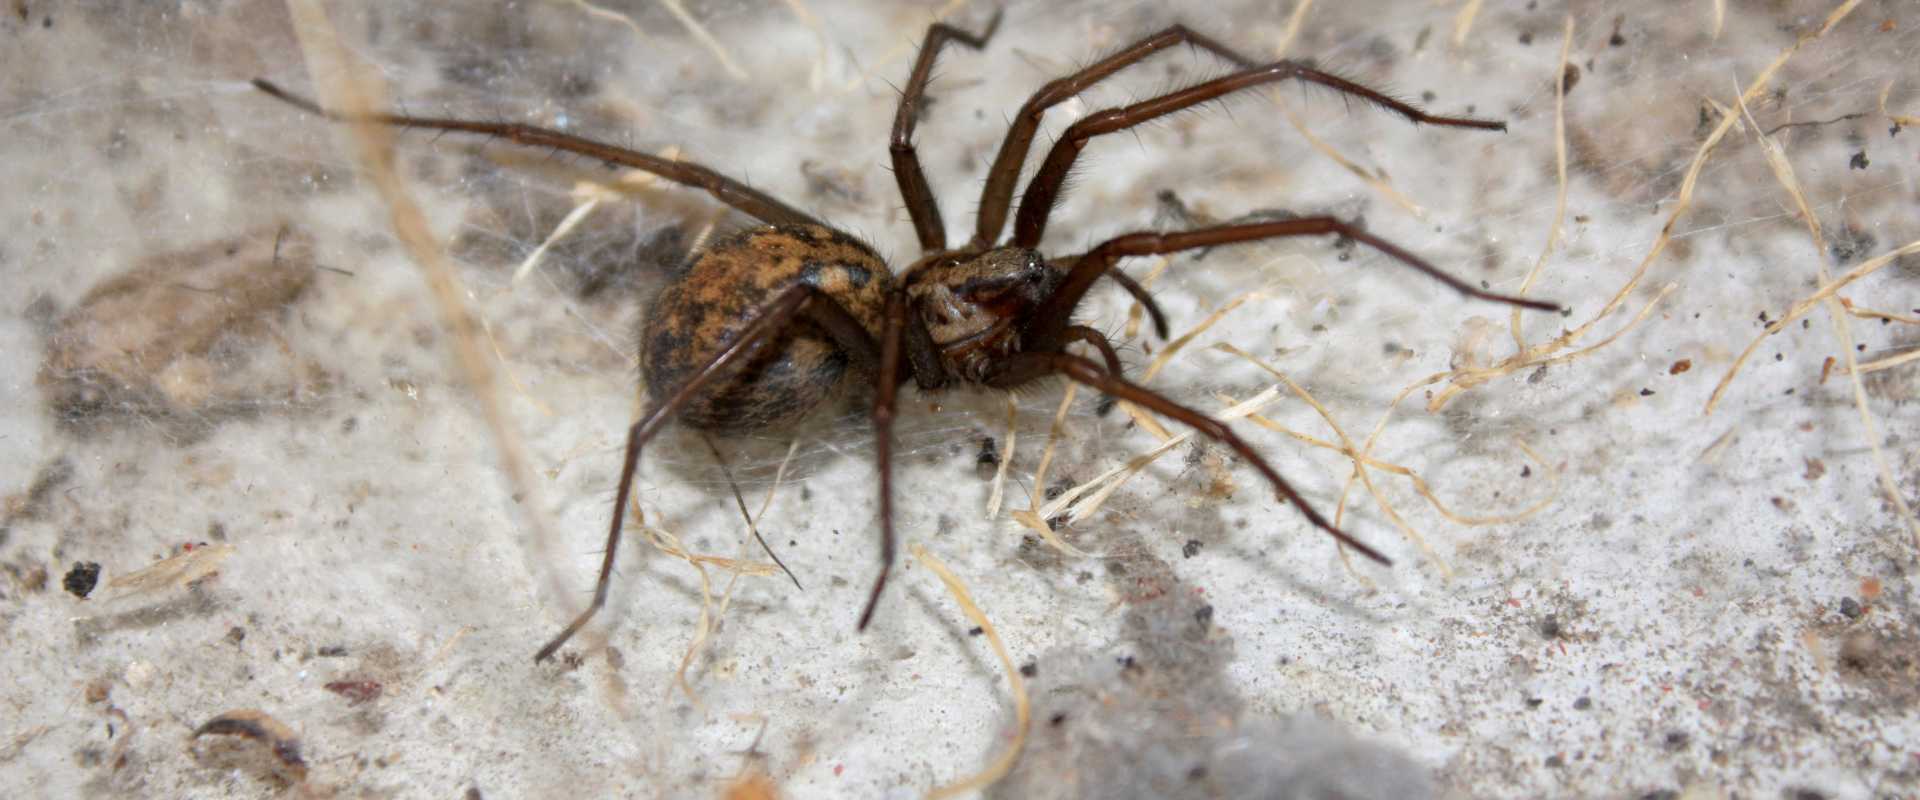 Hobo Spiders  Miche Pest Control